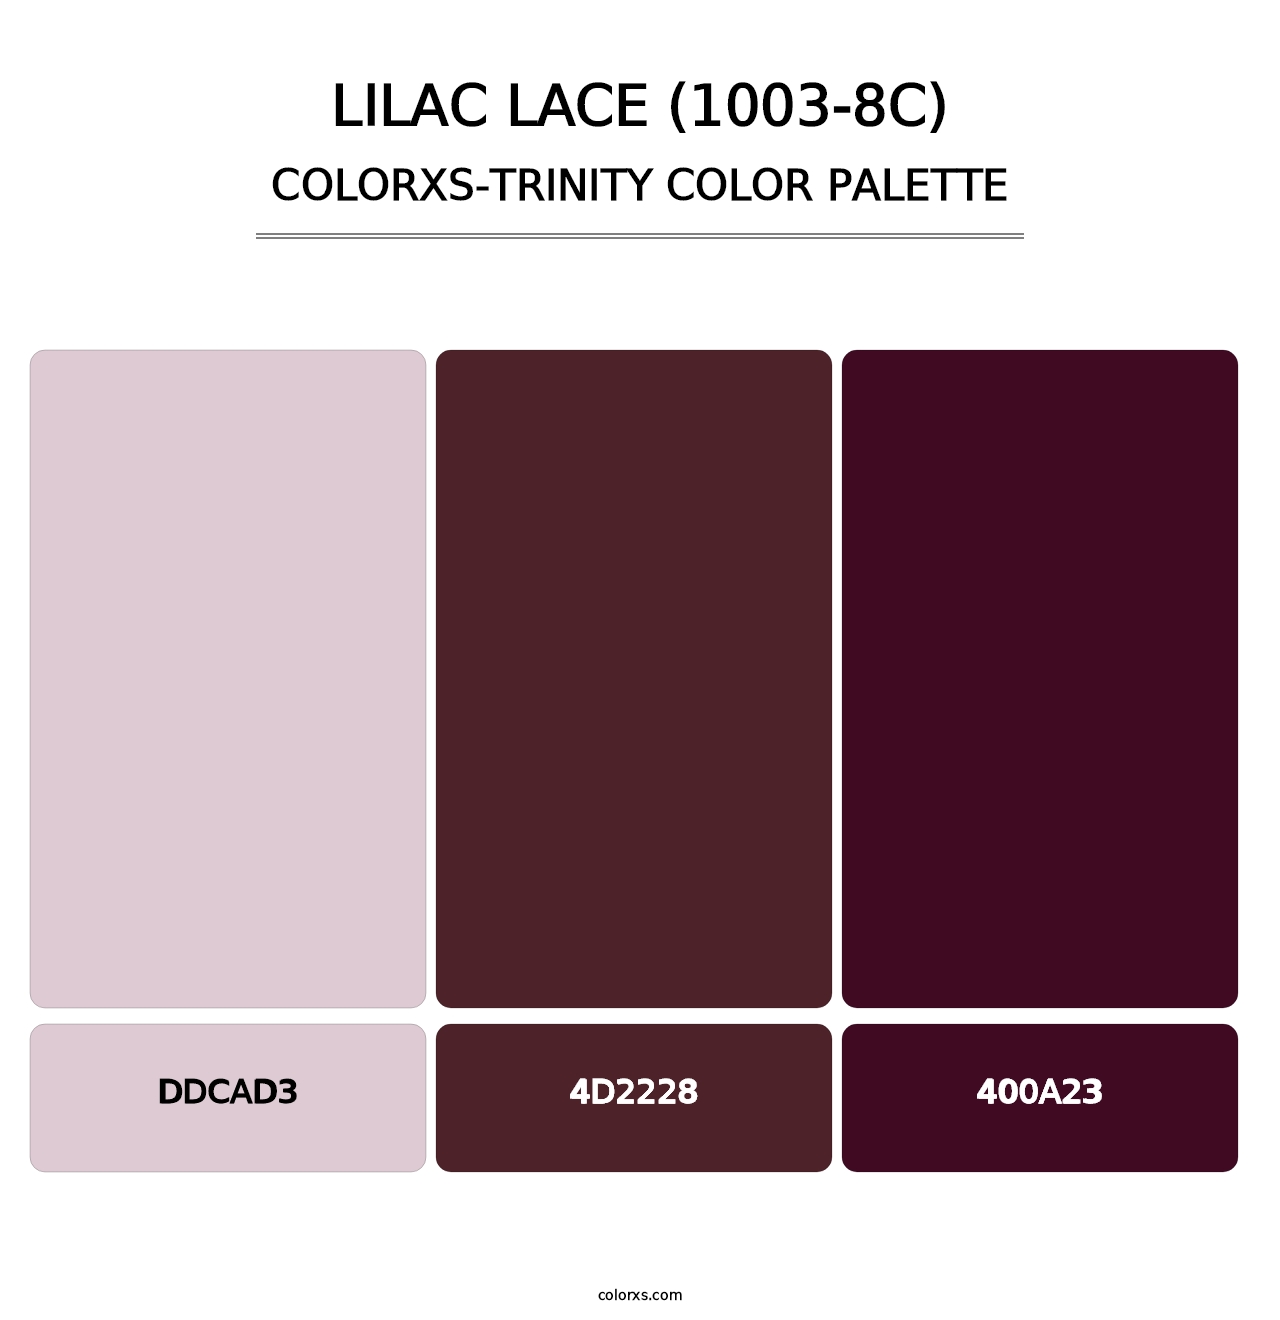 Lilac Lace (1003-8C) - Colorxs Trinity Palette